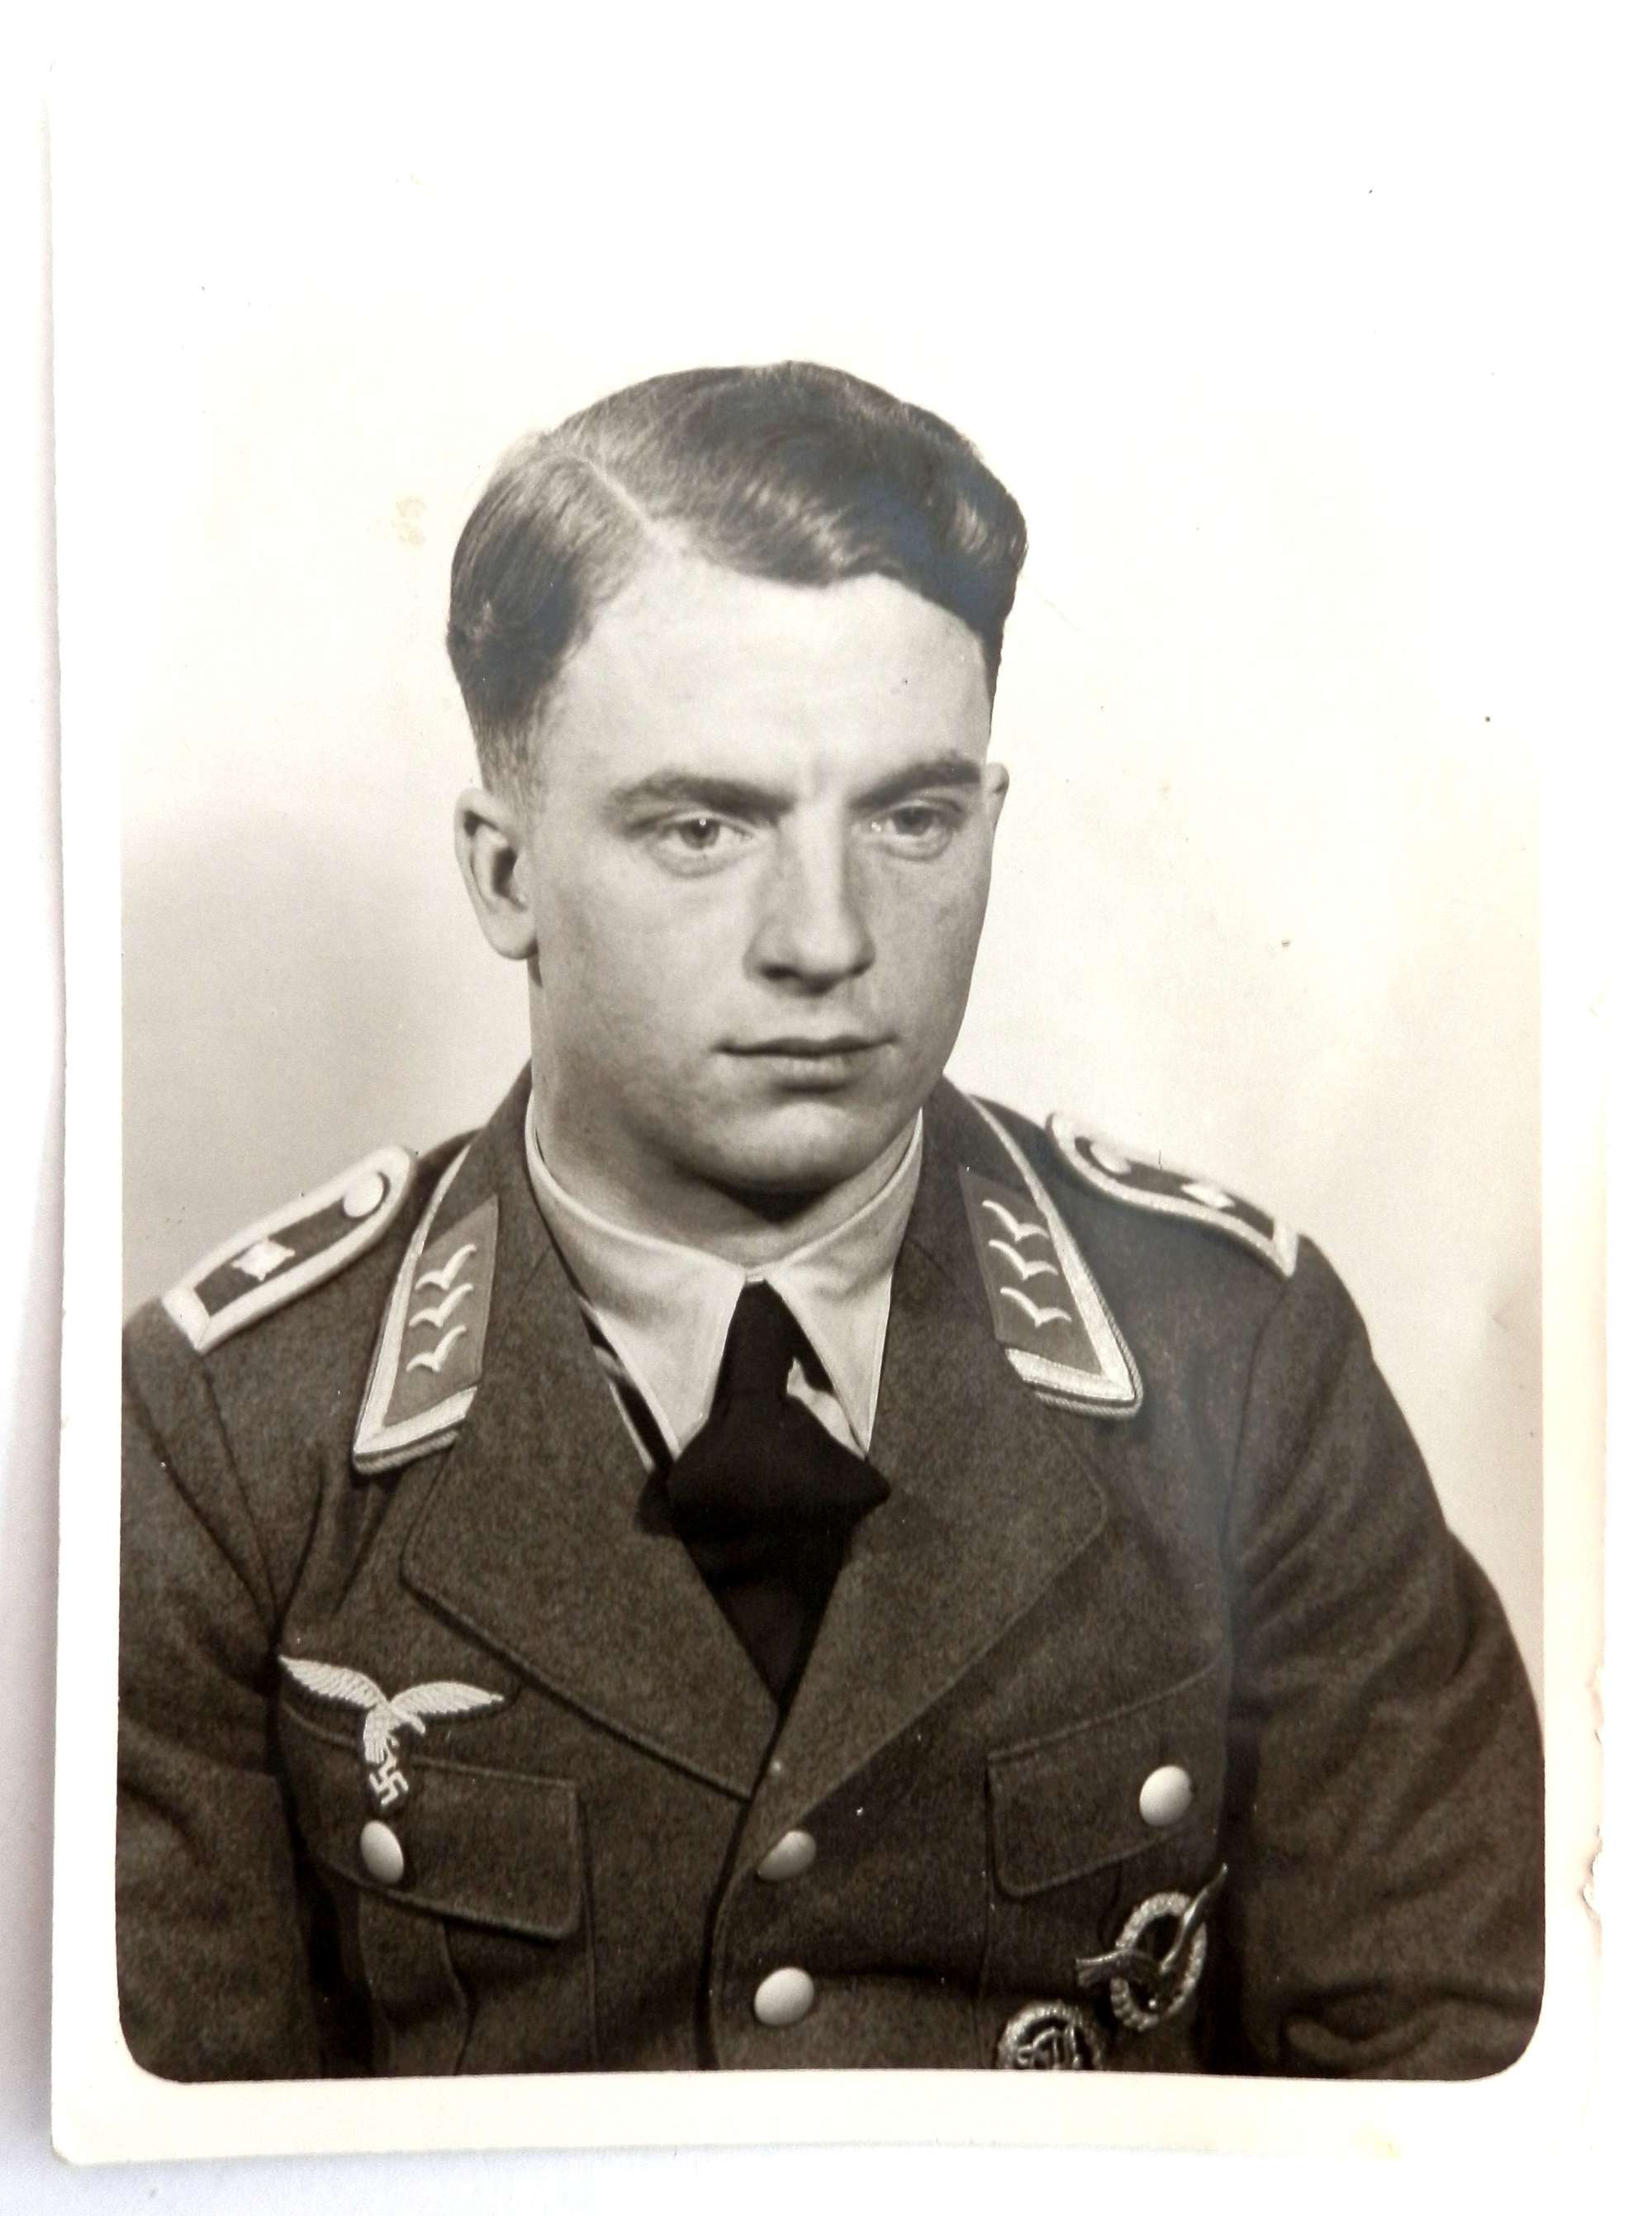 Portrait Photograph of a Feldwebel Pilot of the German Luftwaffe.